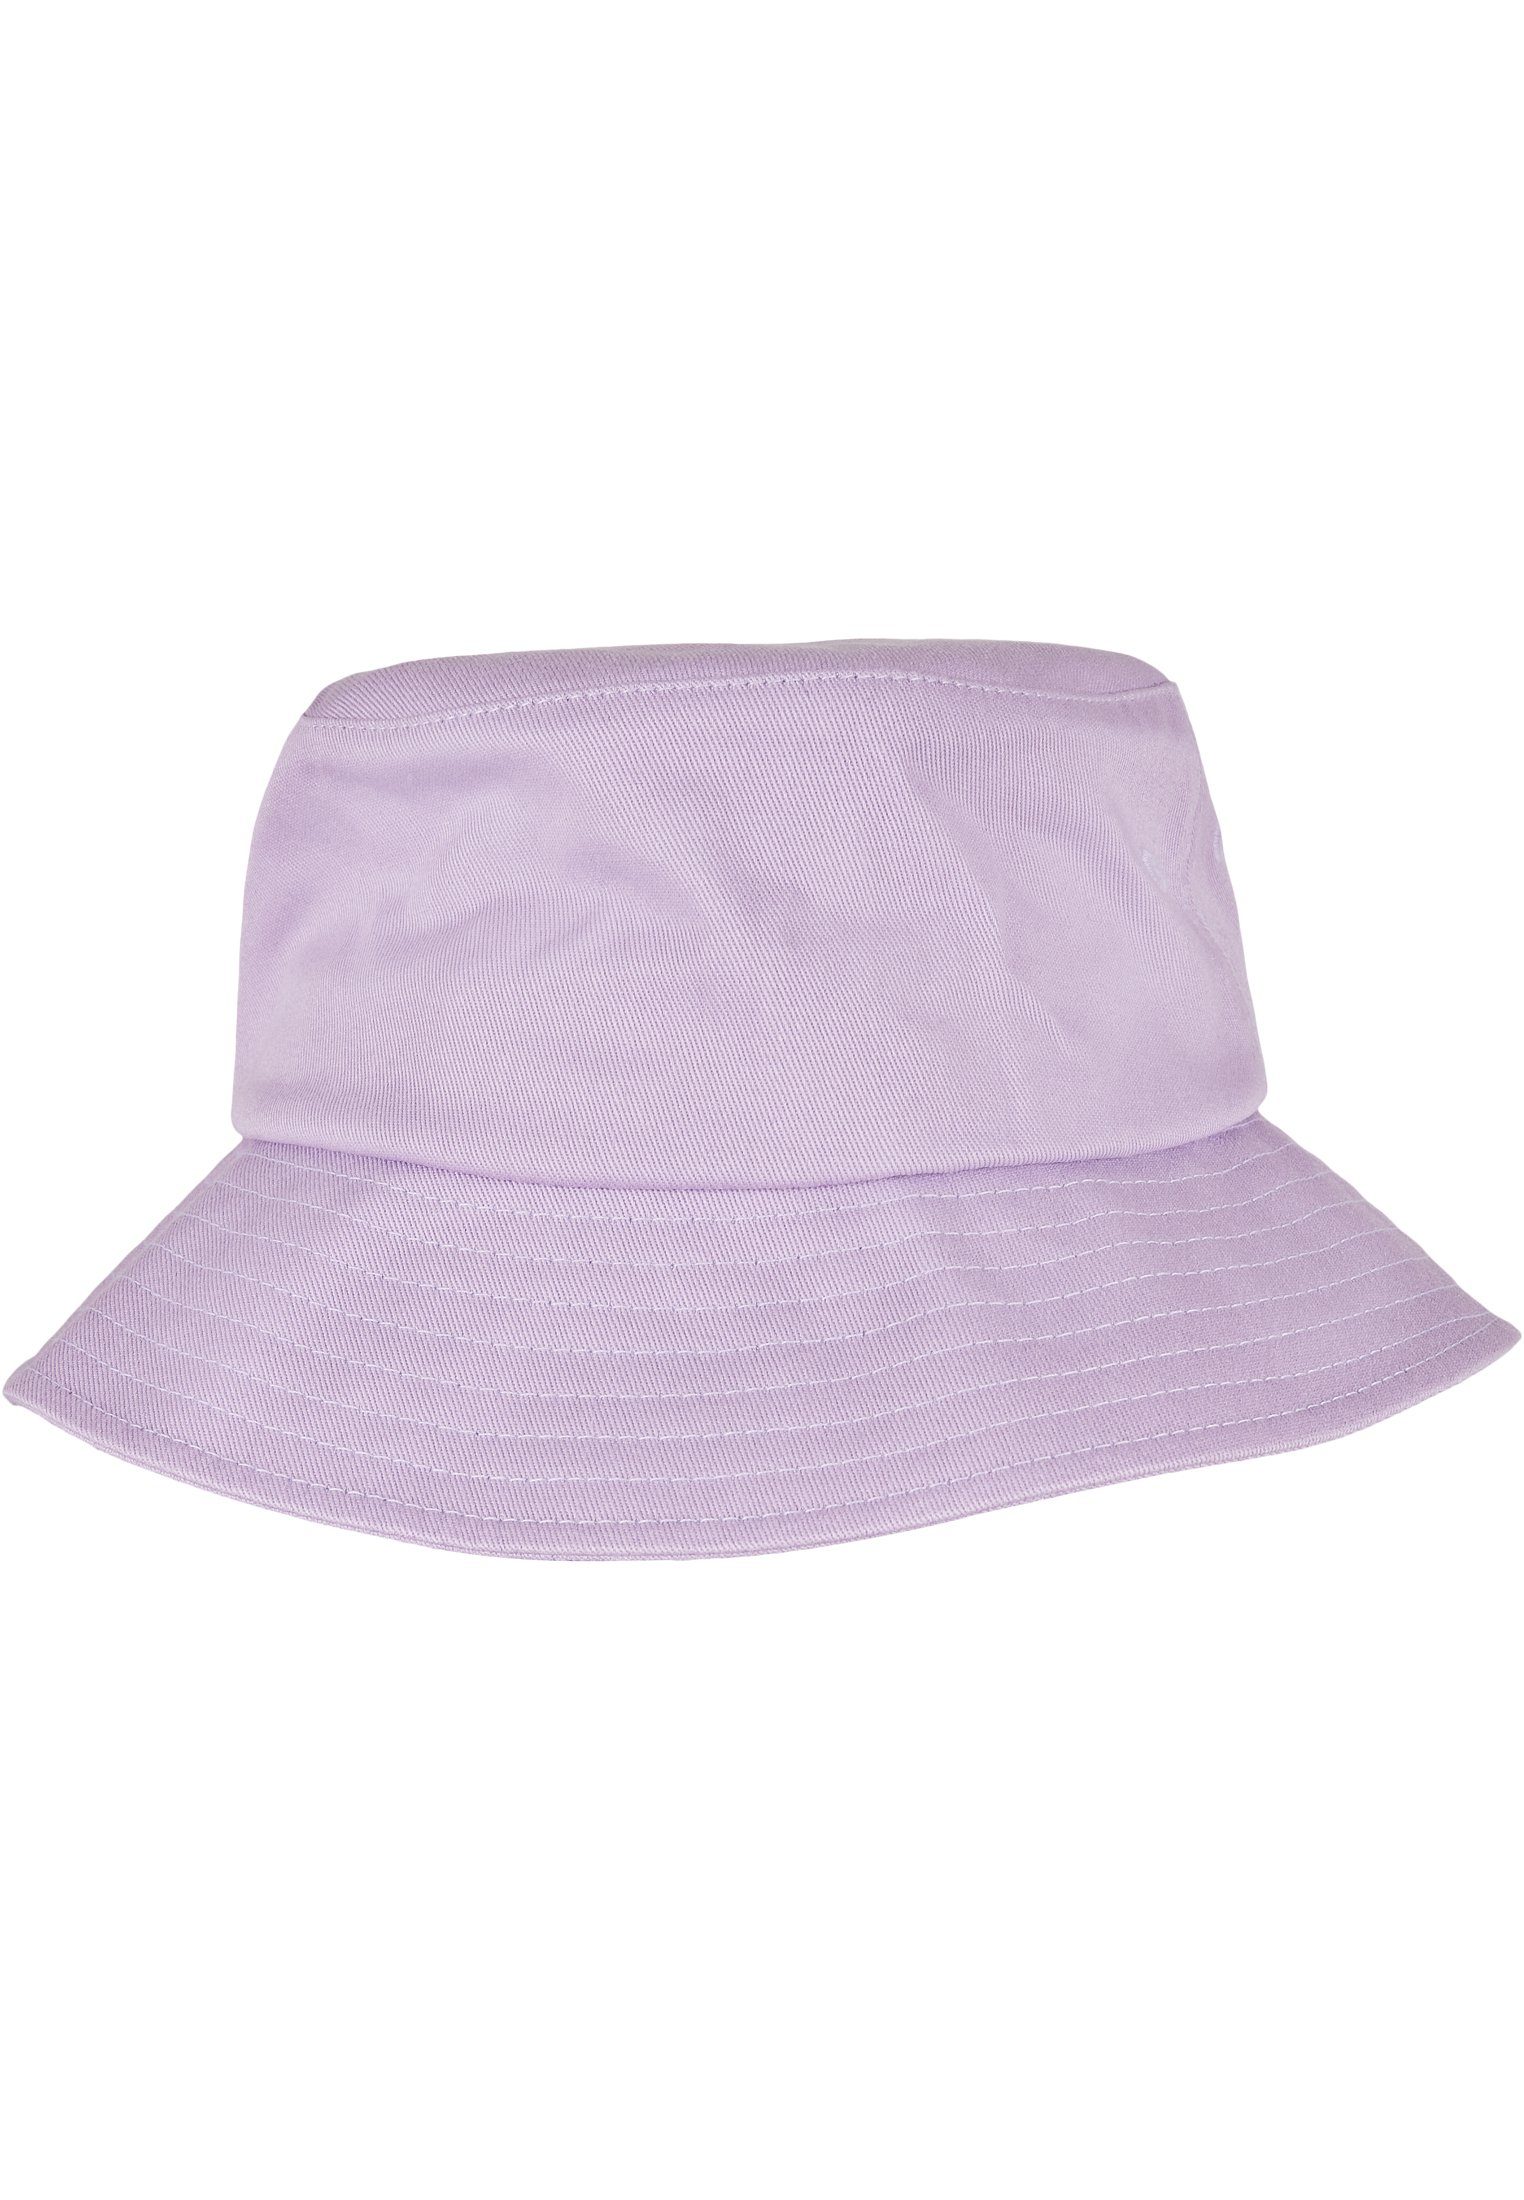 Twill Accessoires Flexfit Bucket Flexfit Cotton Flex lilac Hat Cap